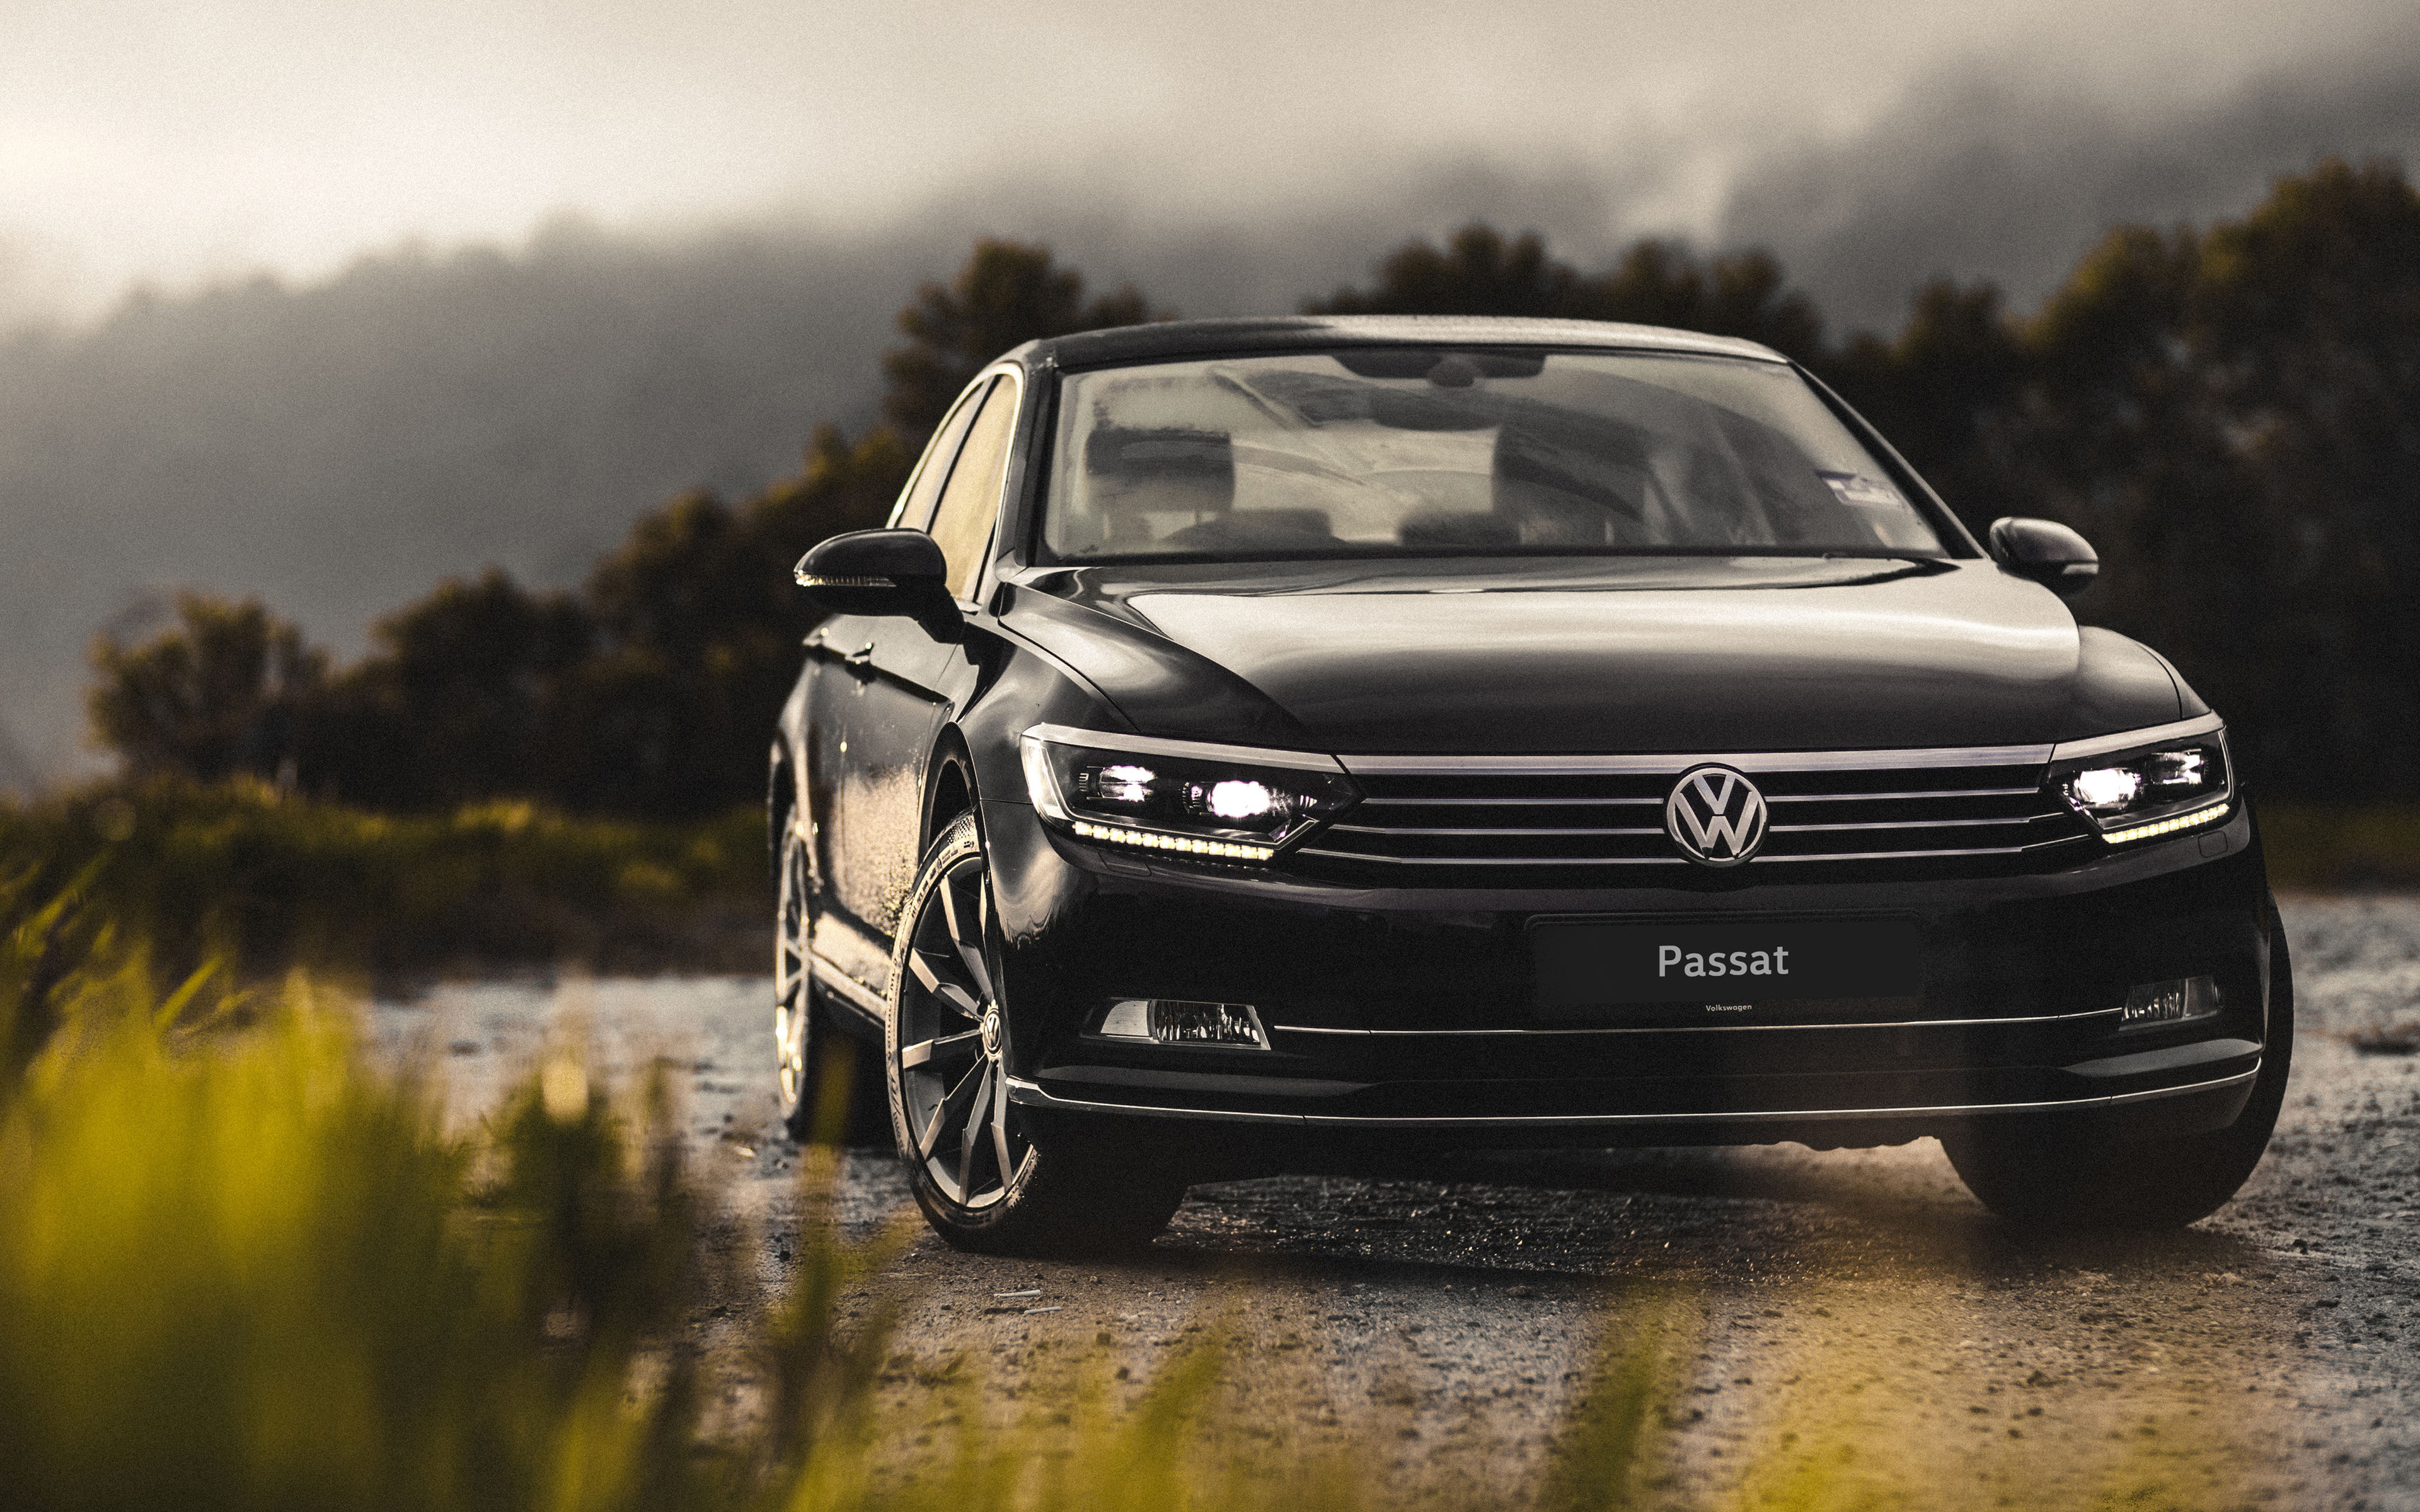 Volkswagen Passat exterior model